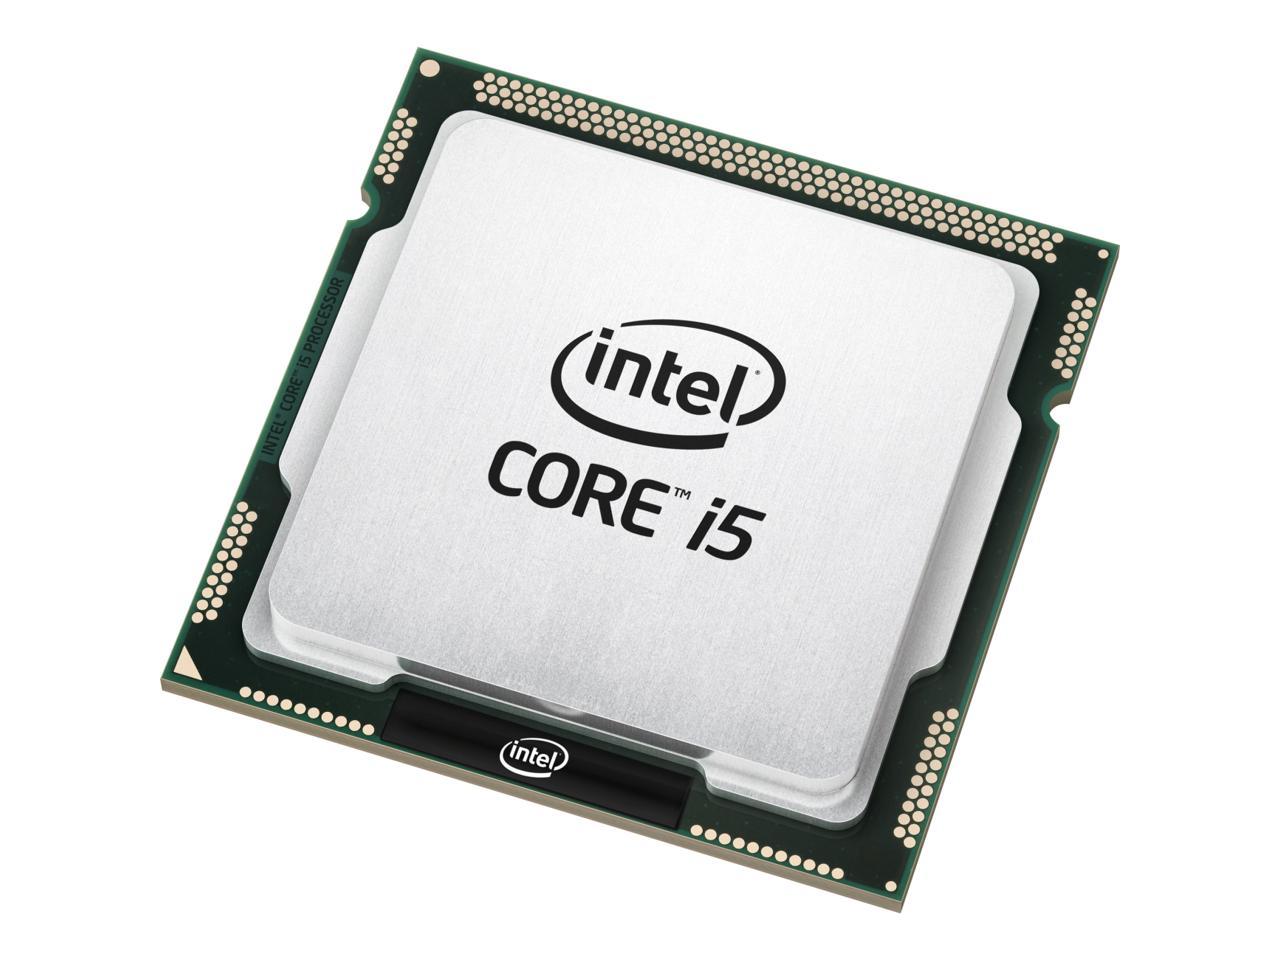 Intel Core i5-3450 - Core i5 3rd Gen Ivy Bridge Quad-Core 3.1GHz (3.5GHz  Turbo) LGA 1155 77W Intel HD Graphics 2500 Desktop Processor - BX80637I53450